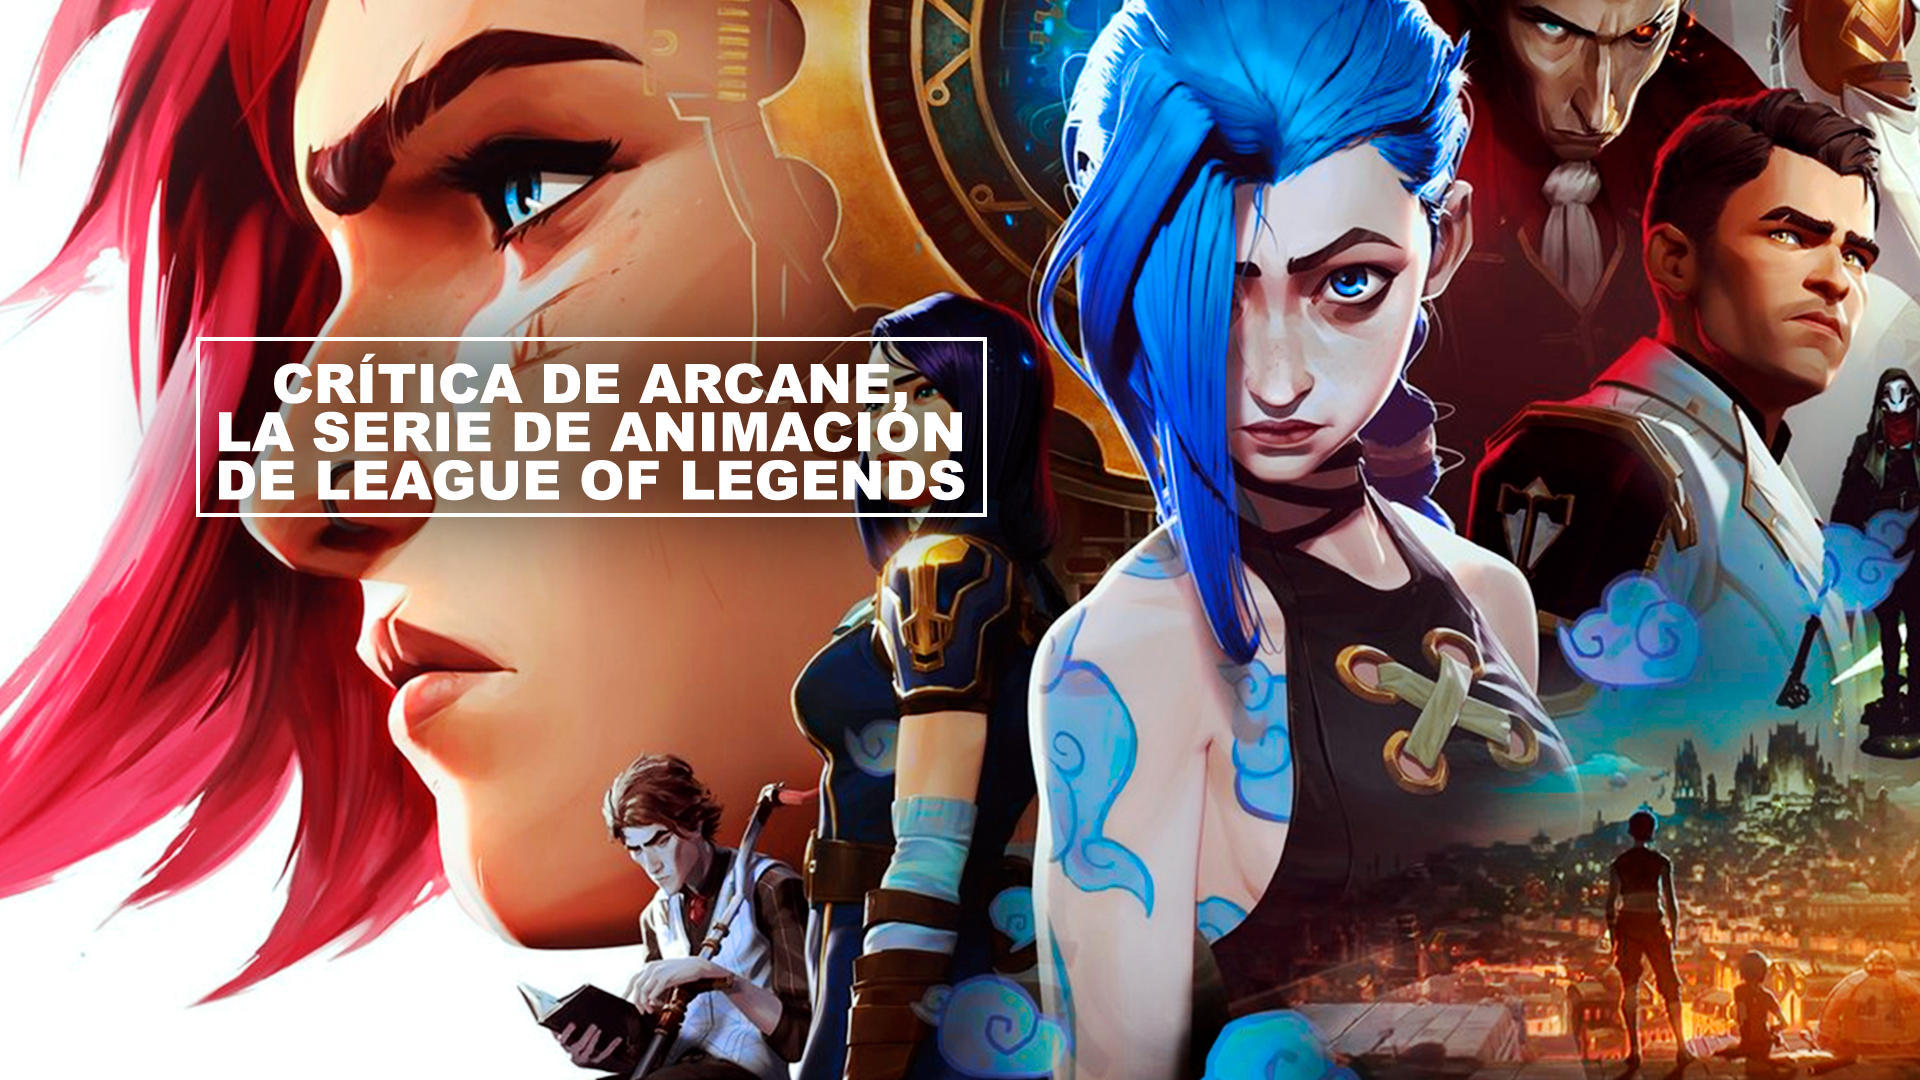 Crtica de Arcane, la serie de animacin de League of Legends